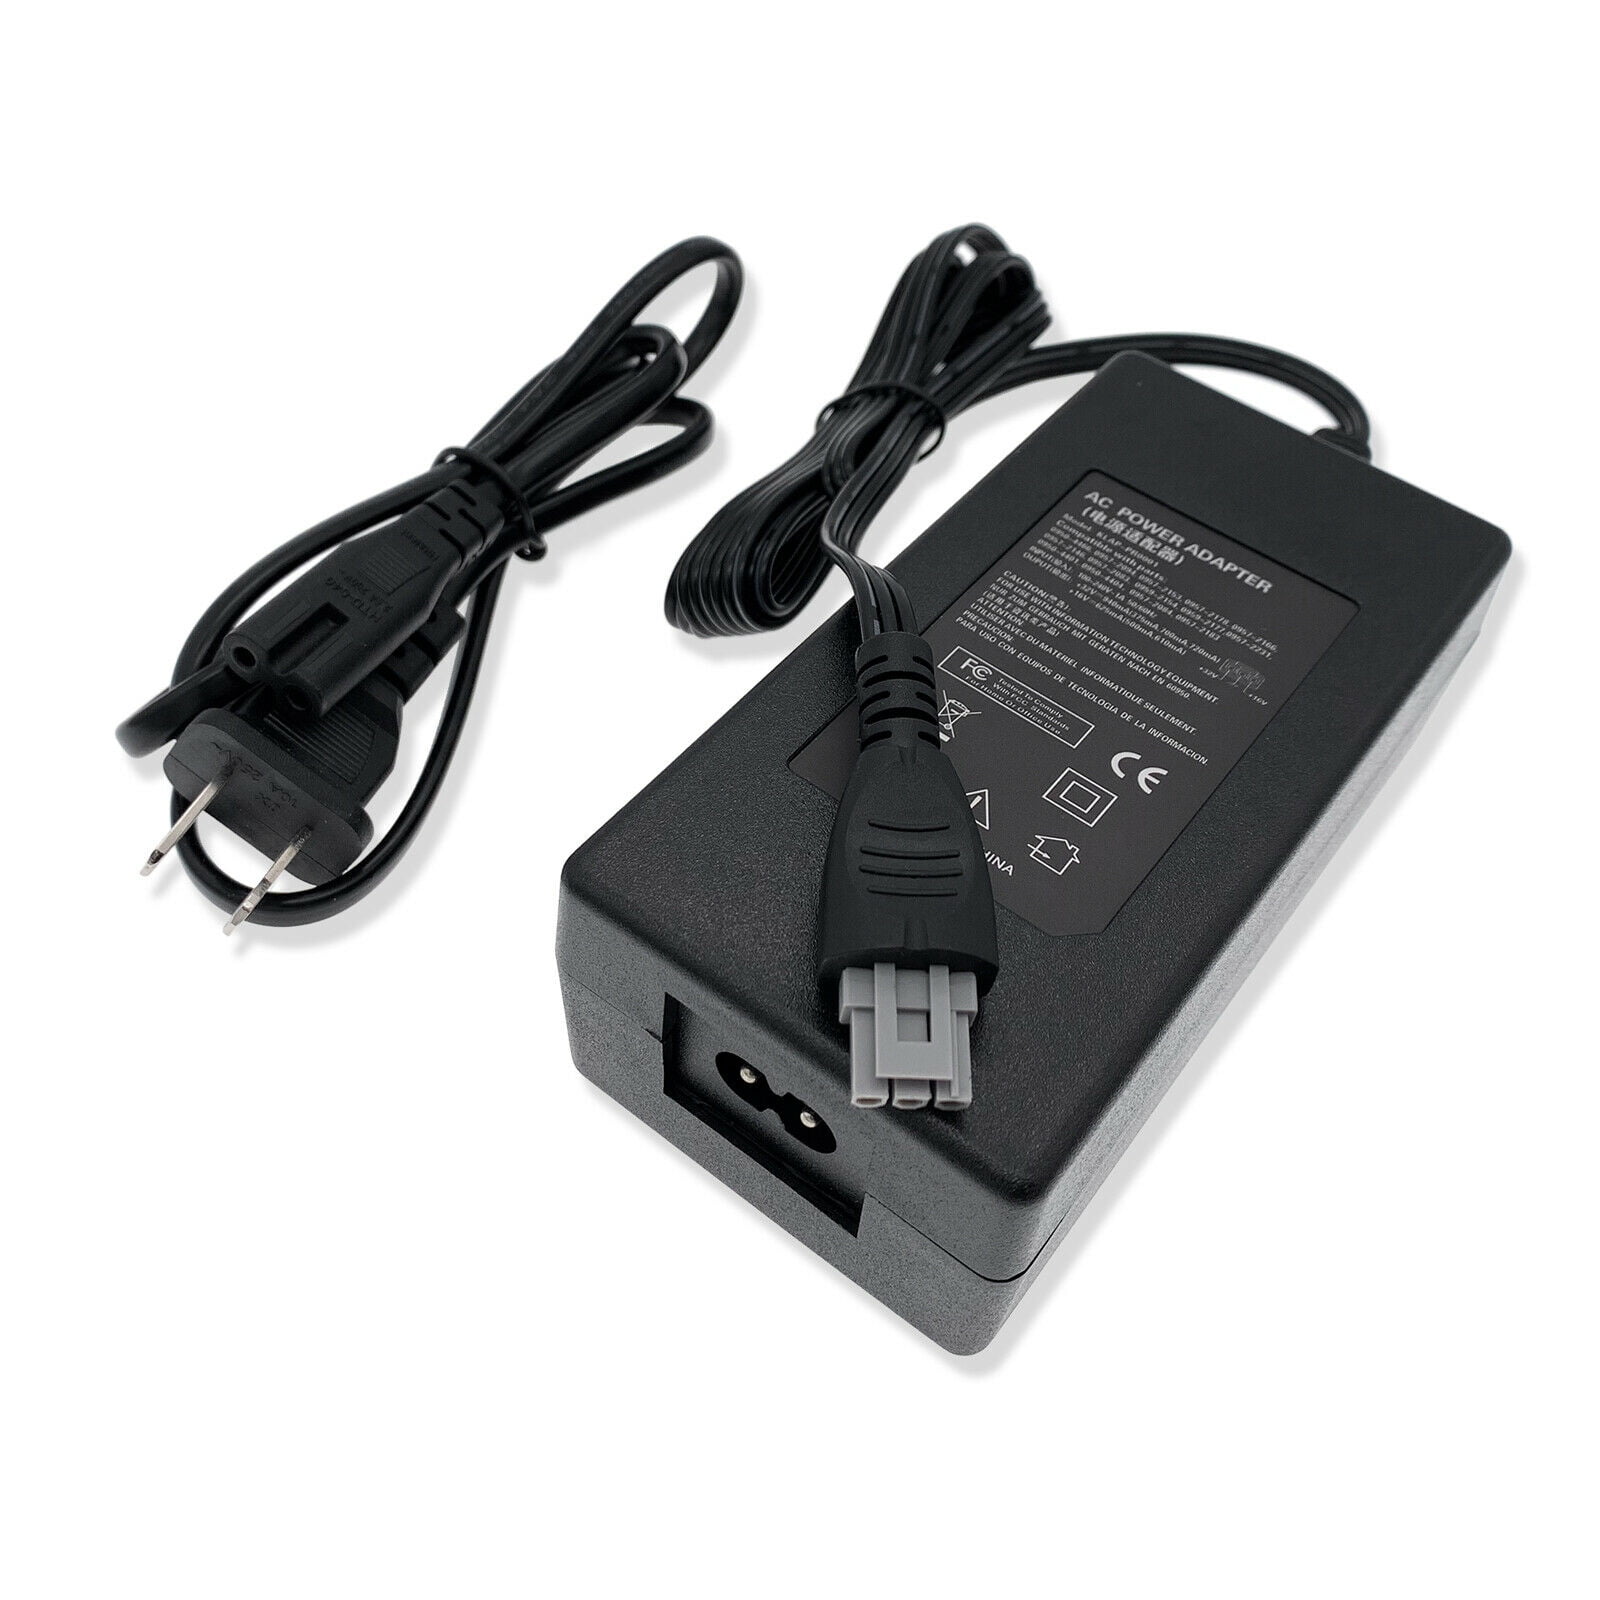 New AC Power Adapter Cord For HP F4175 F4180 F4185 F4188 F4190 Printer - Walmart.com